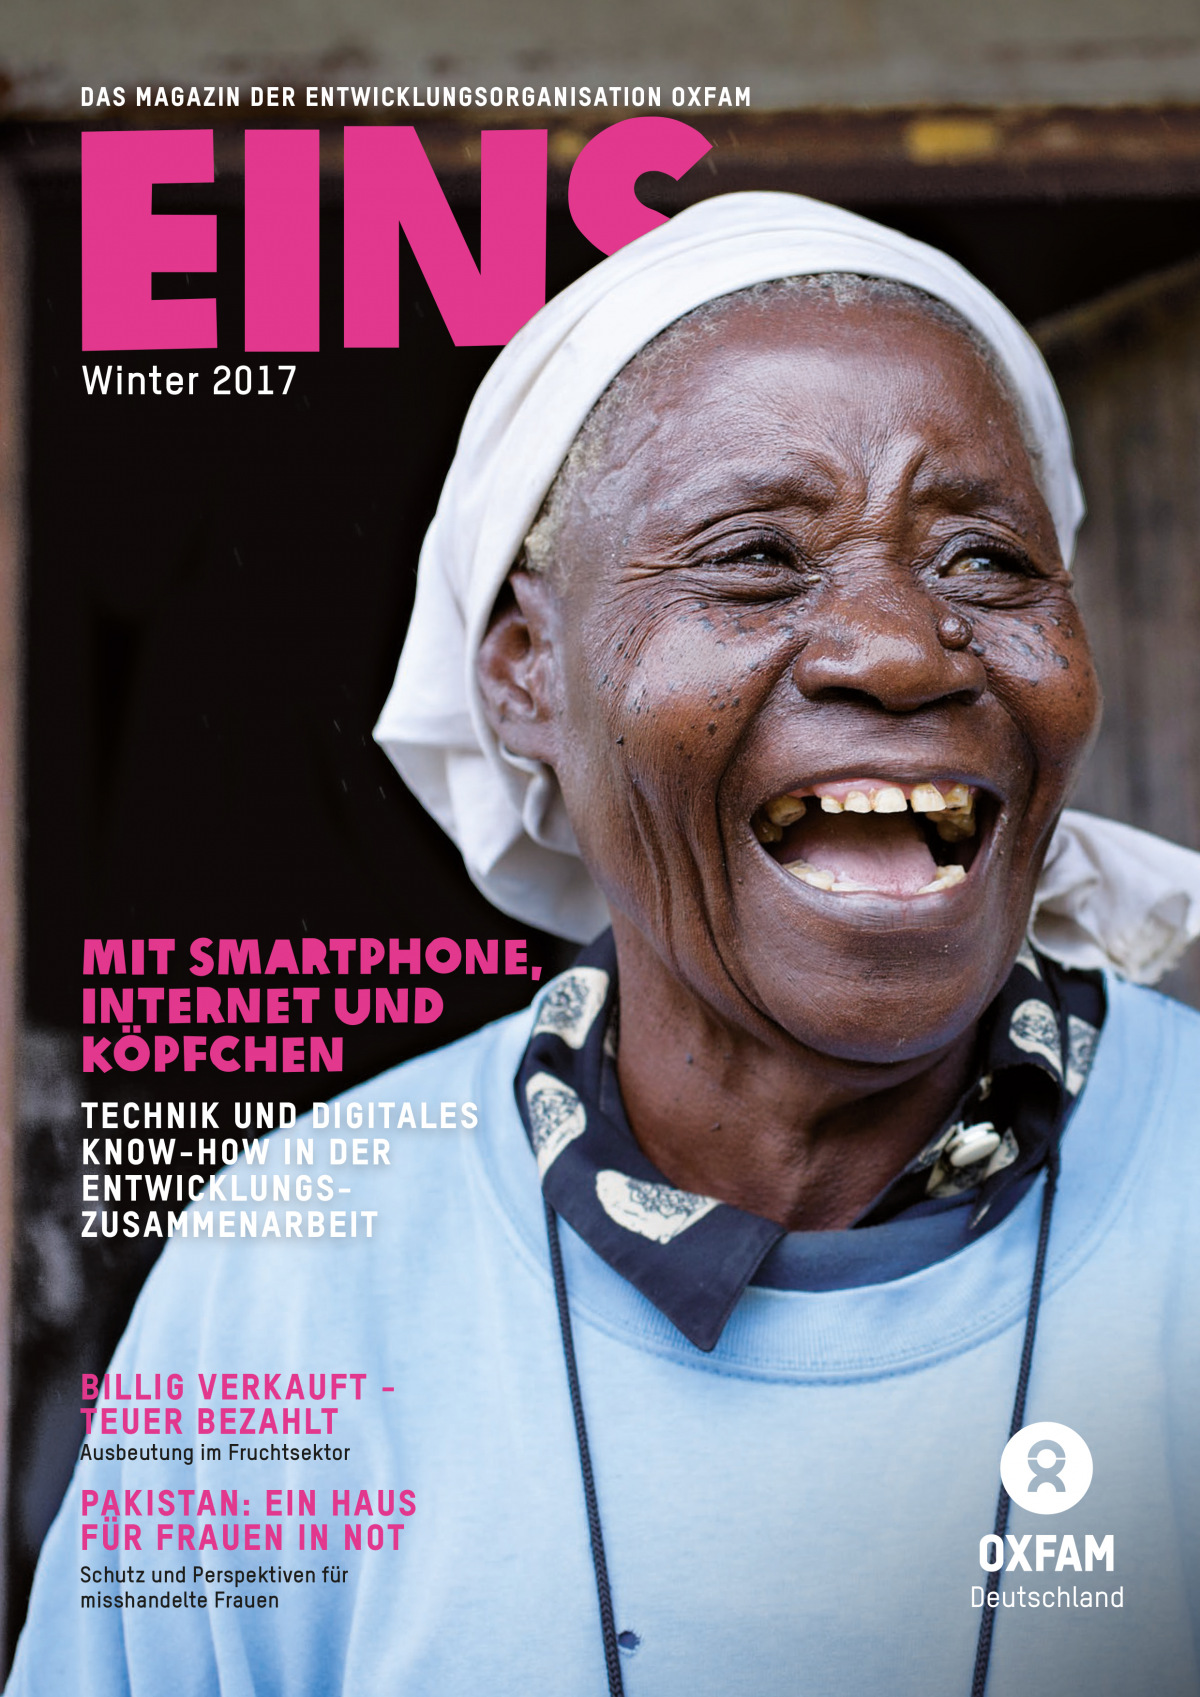 Titelbild vom Oxfam-Magazin EINS (Winter 2017)